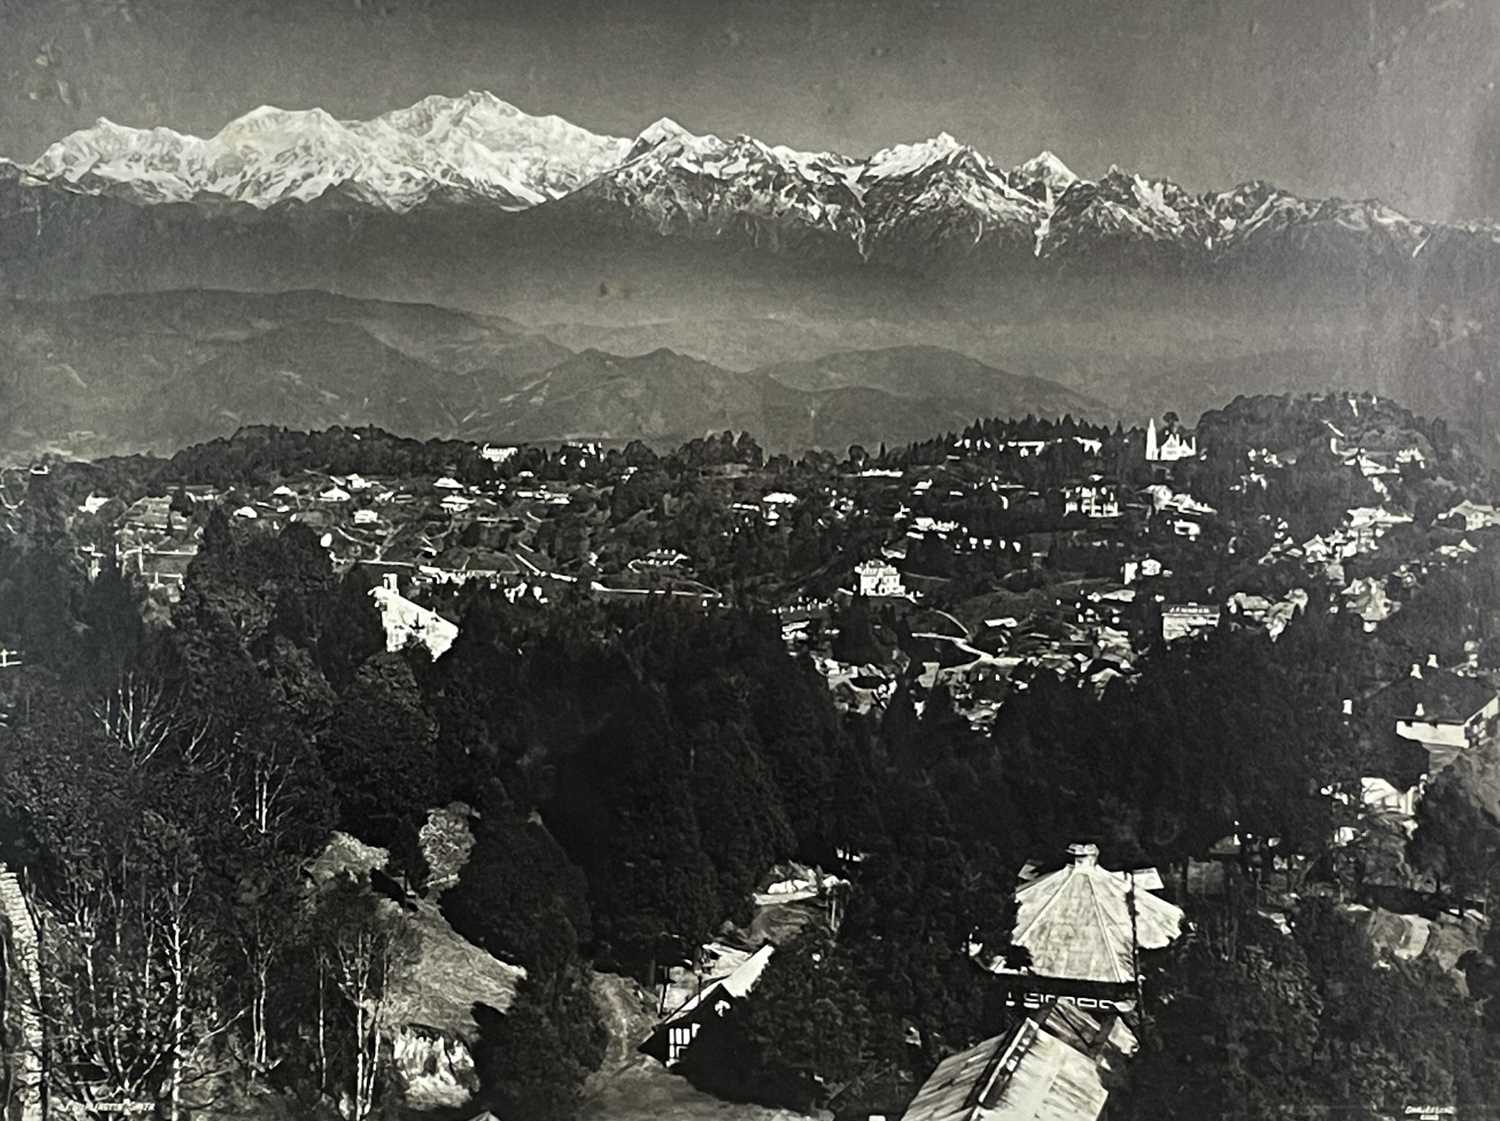 J. Burlington Smith, large photograph of Himalayas, Darjeeling, circa 1900-1920..